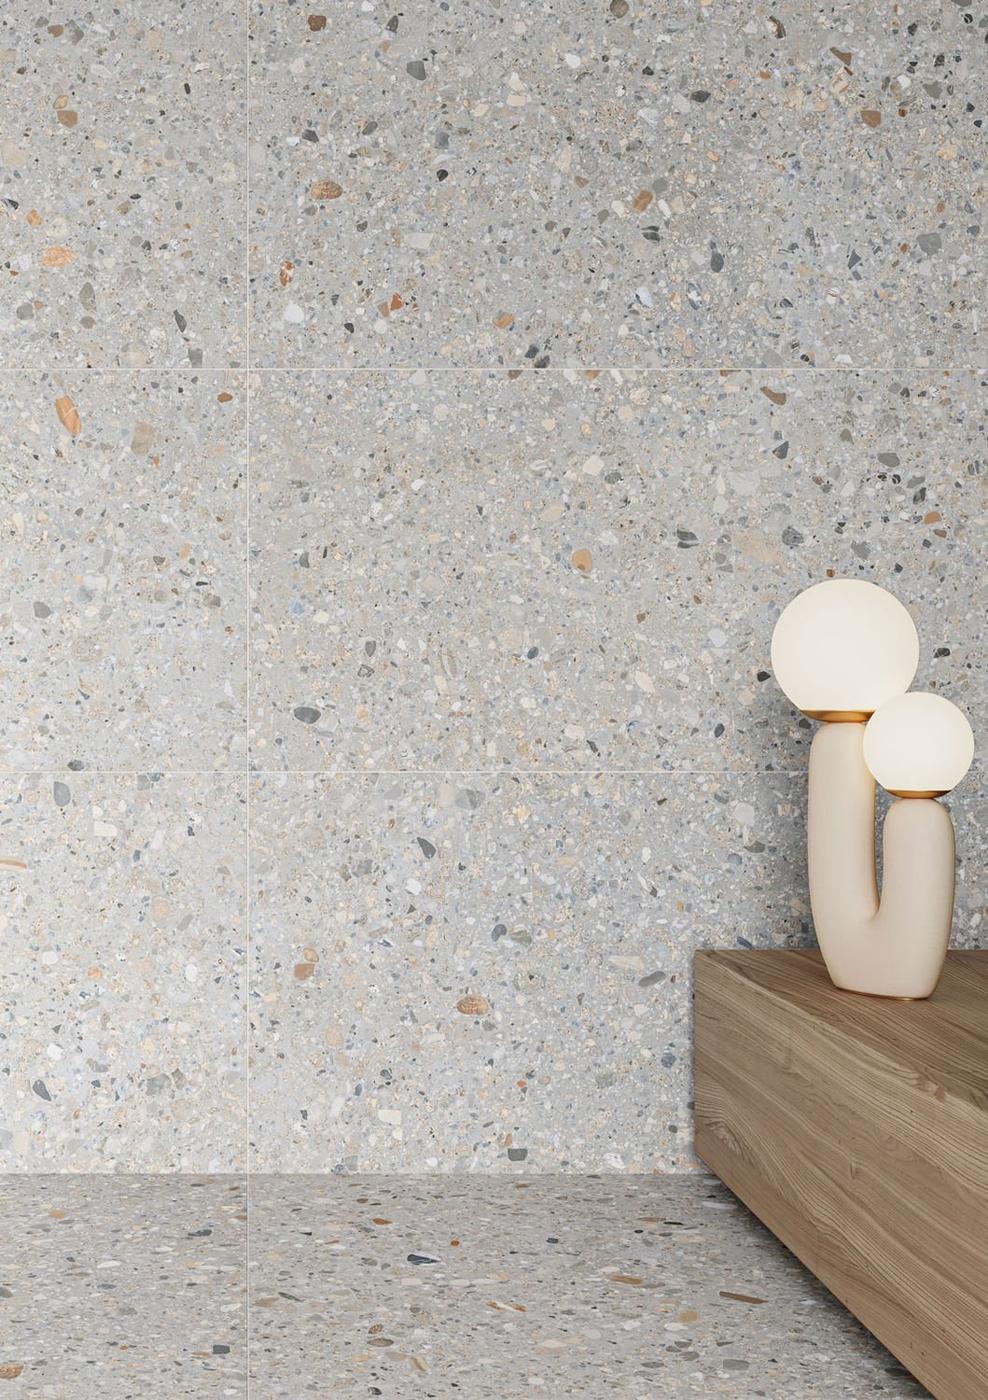 Carrelage Terrazzo blanc avec nuances de gris et touches de marron 60x60 cm sur sol et mur dans espace moderne avec lampe décorative beige